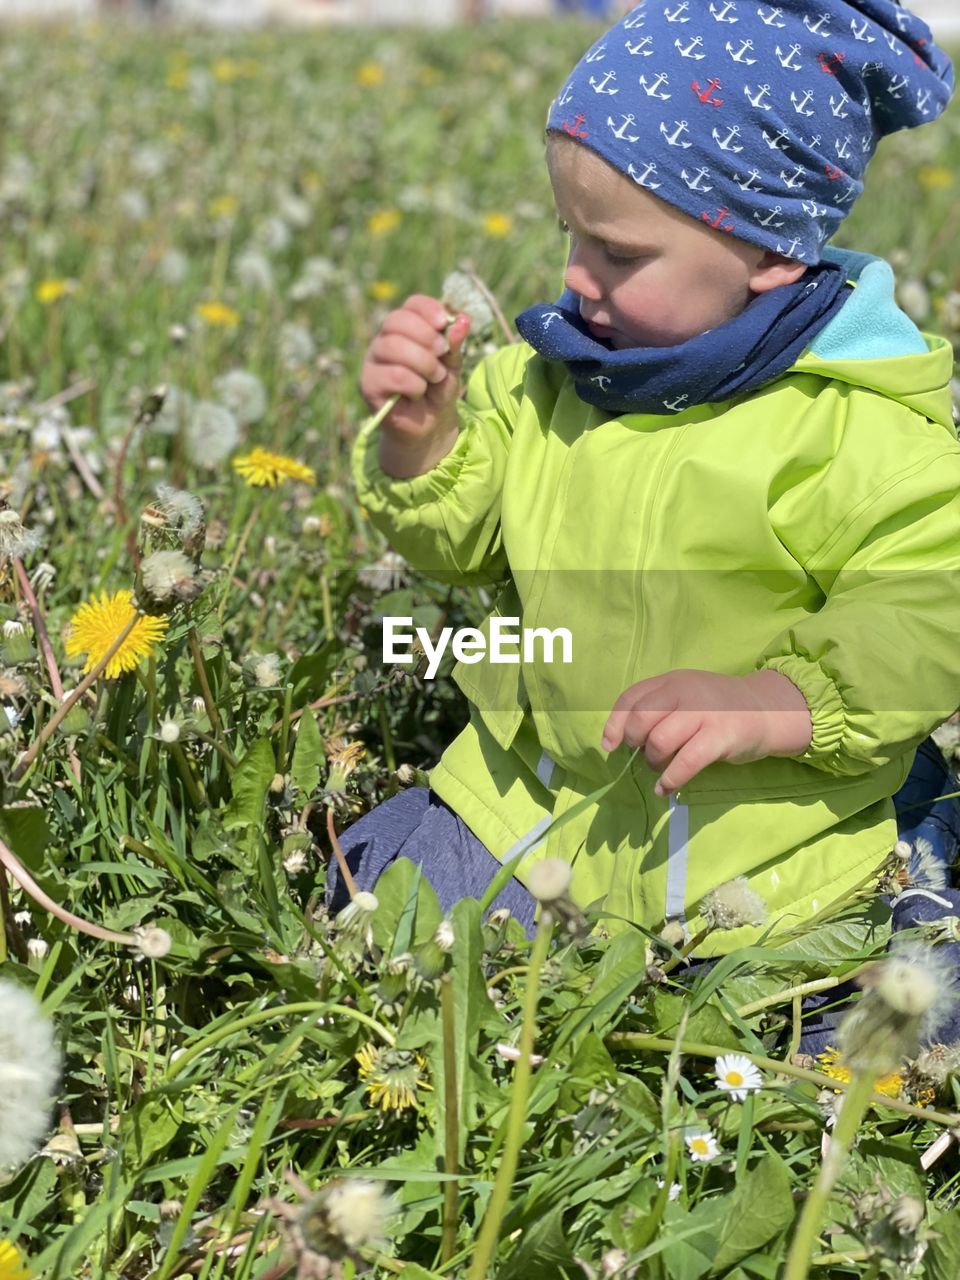 Boy holding plants on field